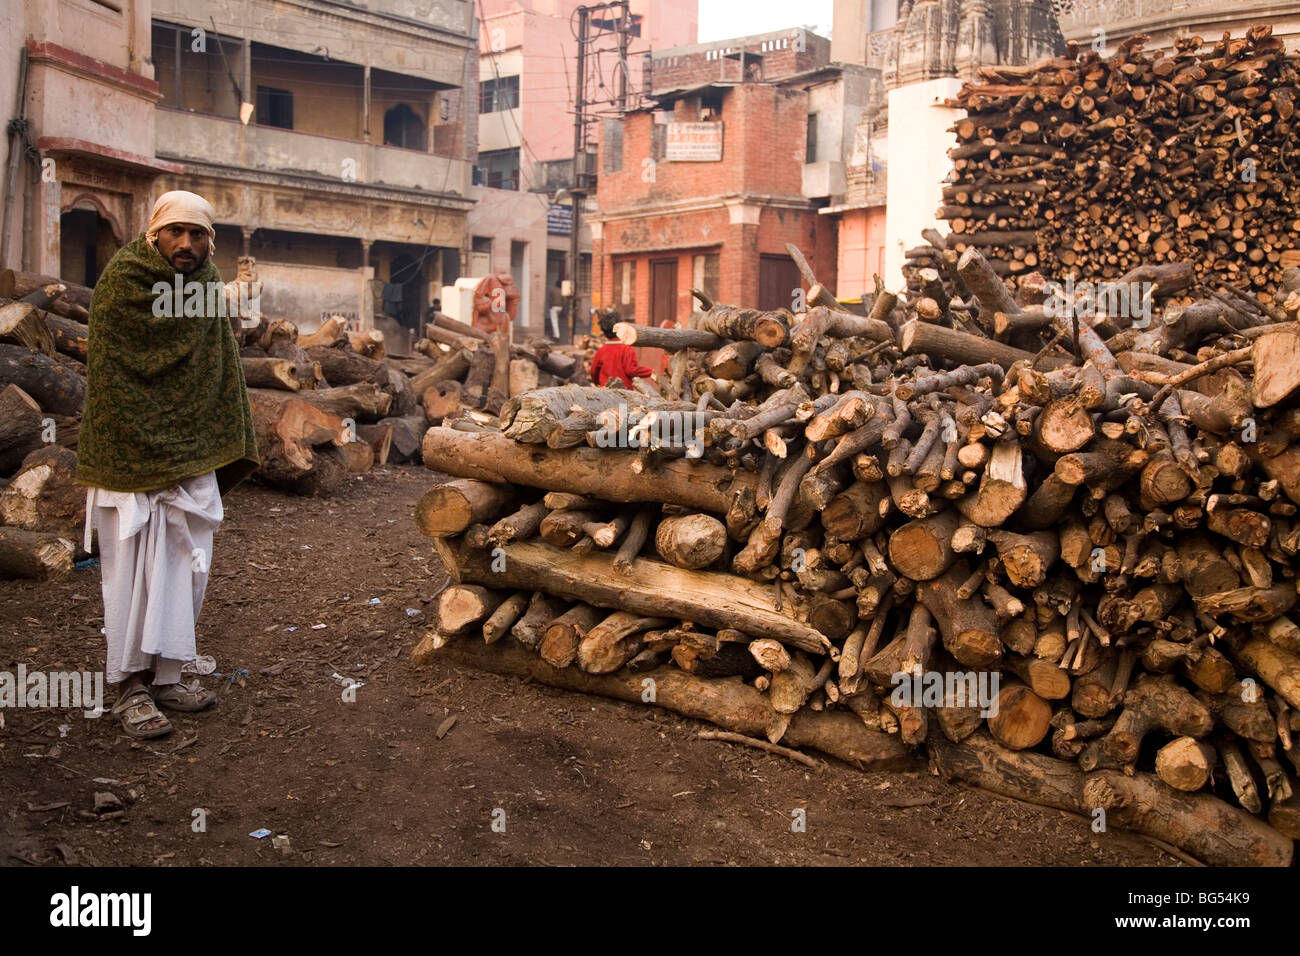 Dom, un membre de la caste hindoue qui conduit des cérémonies de crémation, les peuplements de bois empilé par le Marnikarnika Ghat de Varanasi. Banque D'Images